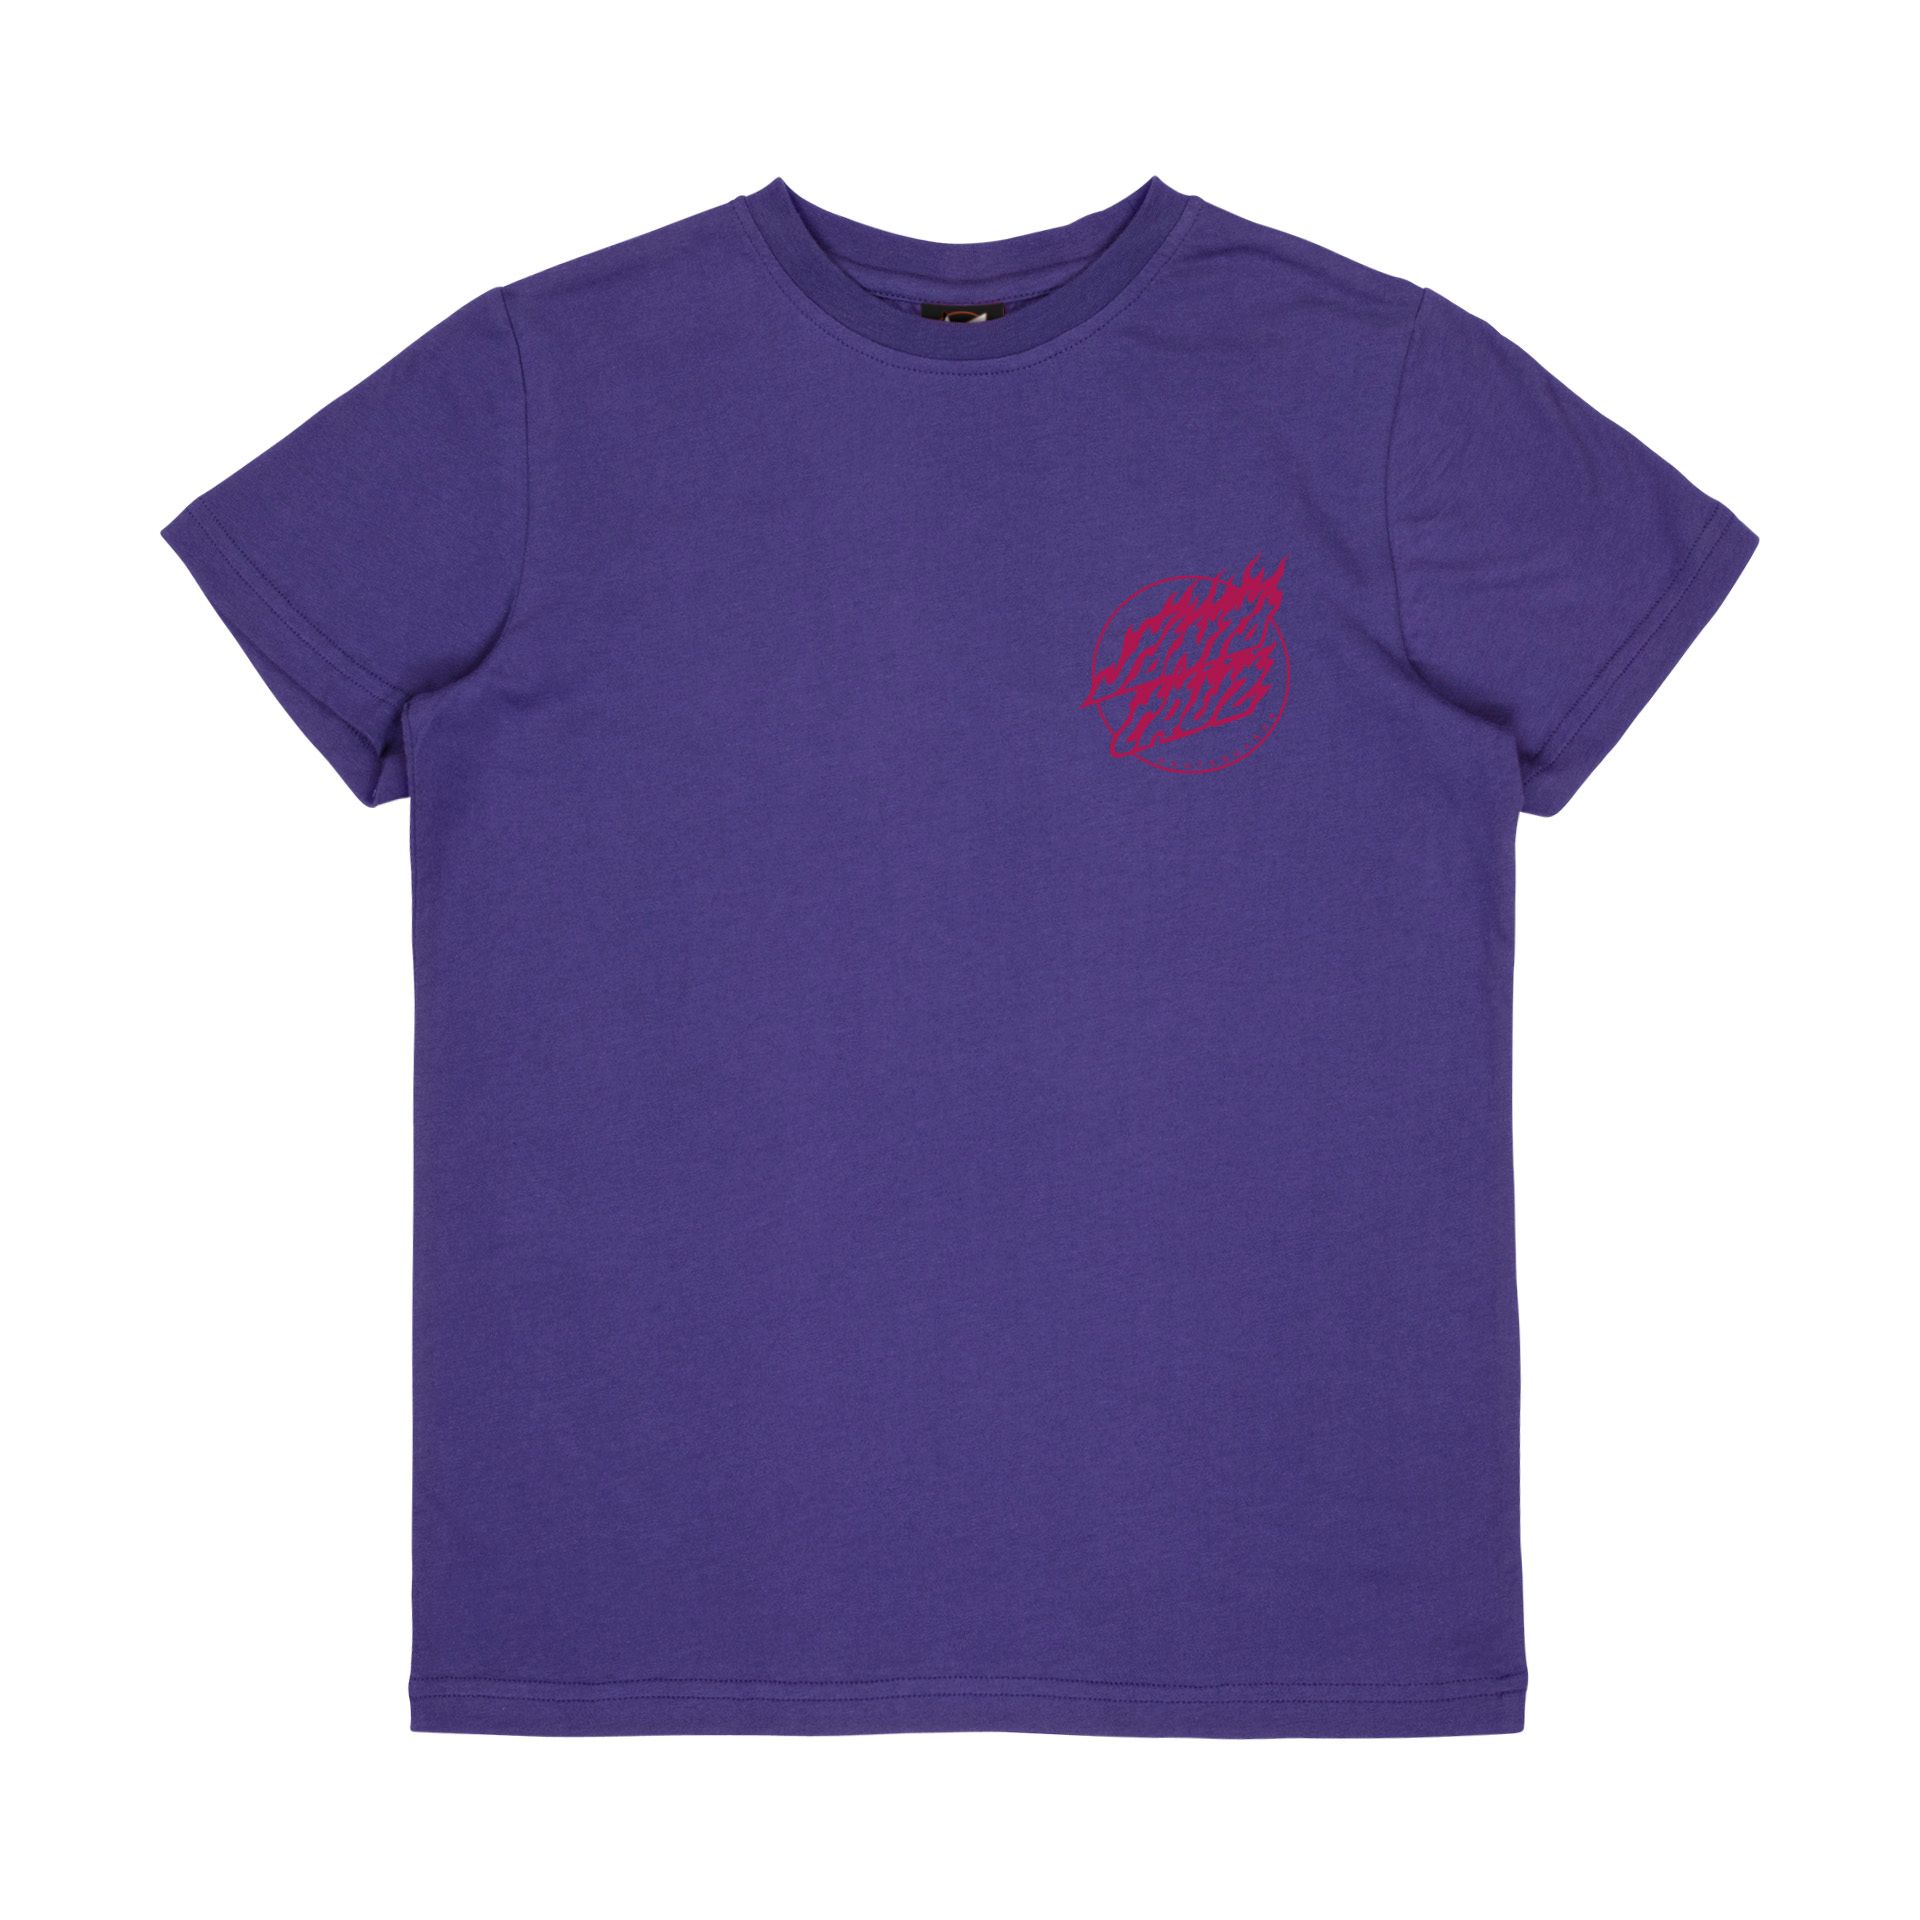 Santa Cruz Charmander youth t-shirt purple